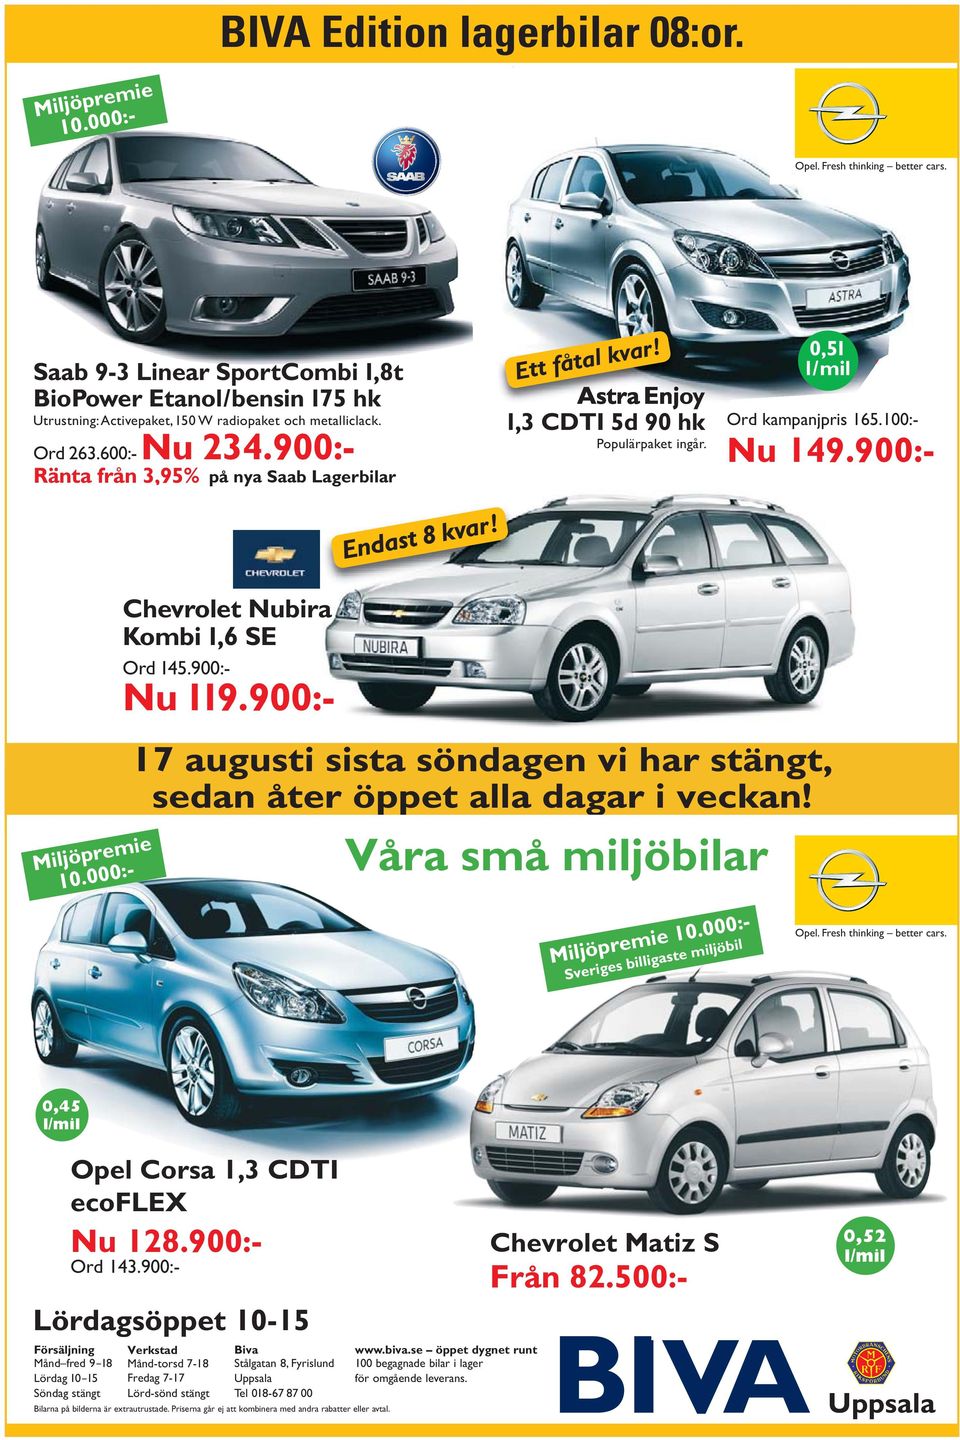 900:- Ränta från 3,95% Ränta från 3,95% på nya Saab Lagerbilar! Endast 8 kvar! Ett fåtal kvar! Astra Enjoy 1,3 CDTI 5d 90 hk Populärpaket ingår. 0,51 l/mil Ord Nu Ord kampanjpris 165.